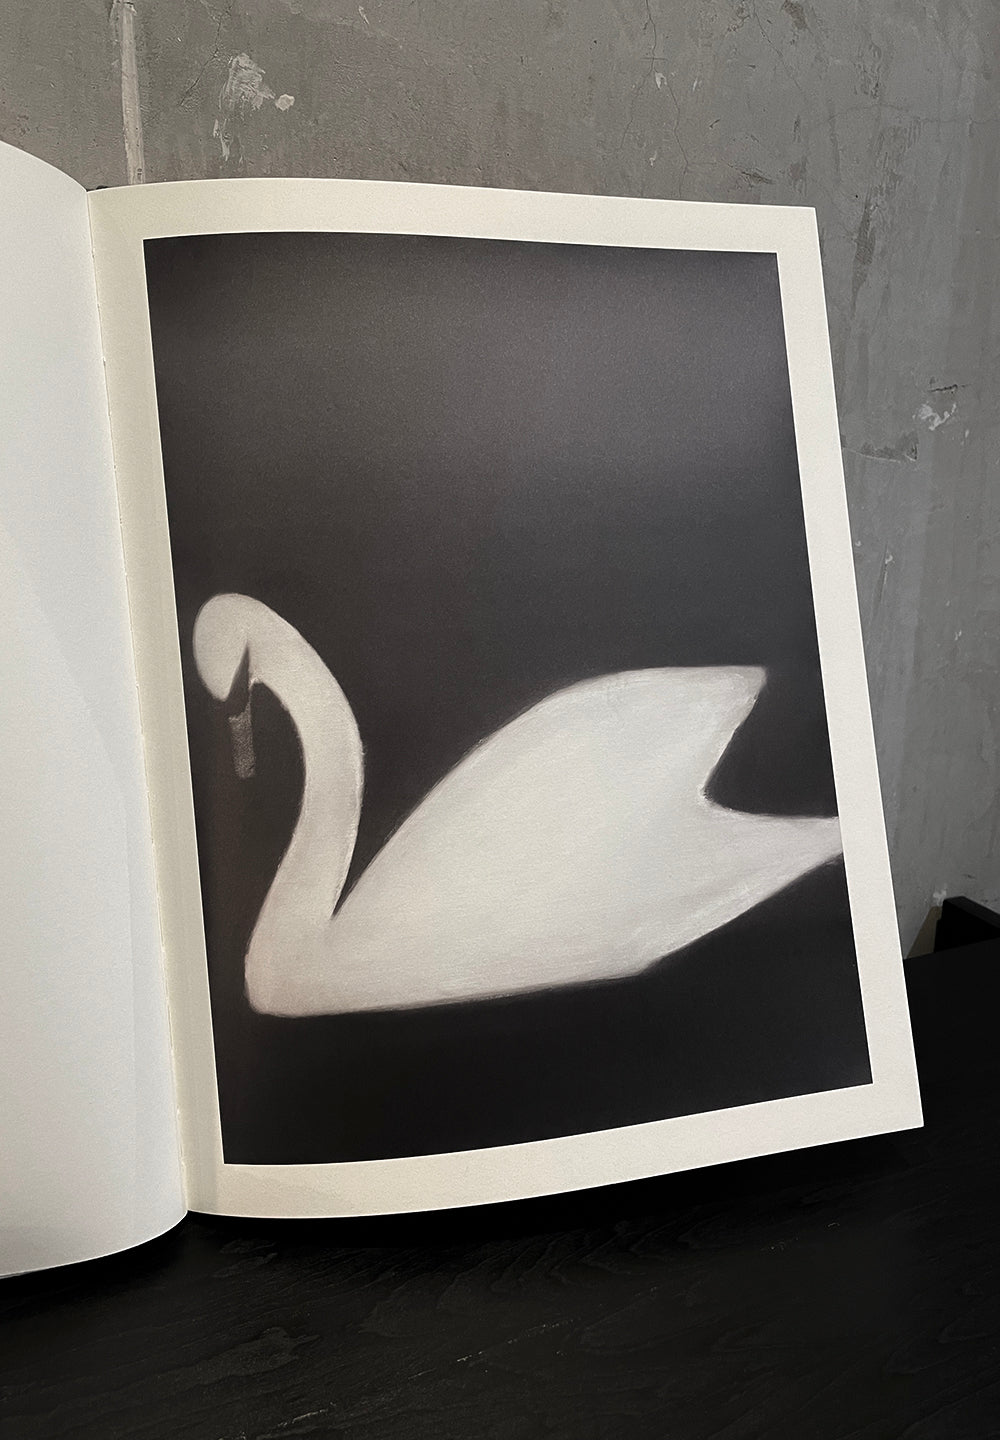 Swan | MATS GUSTAFSON